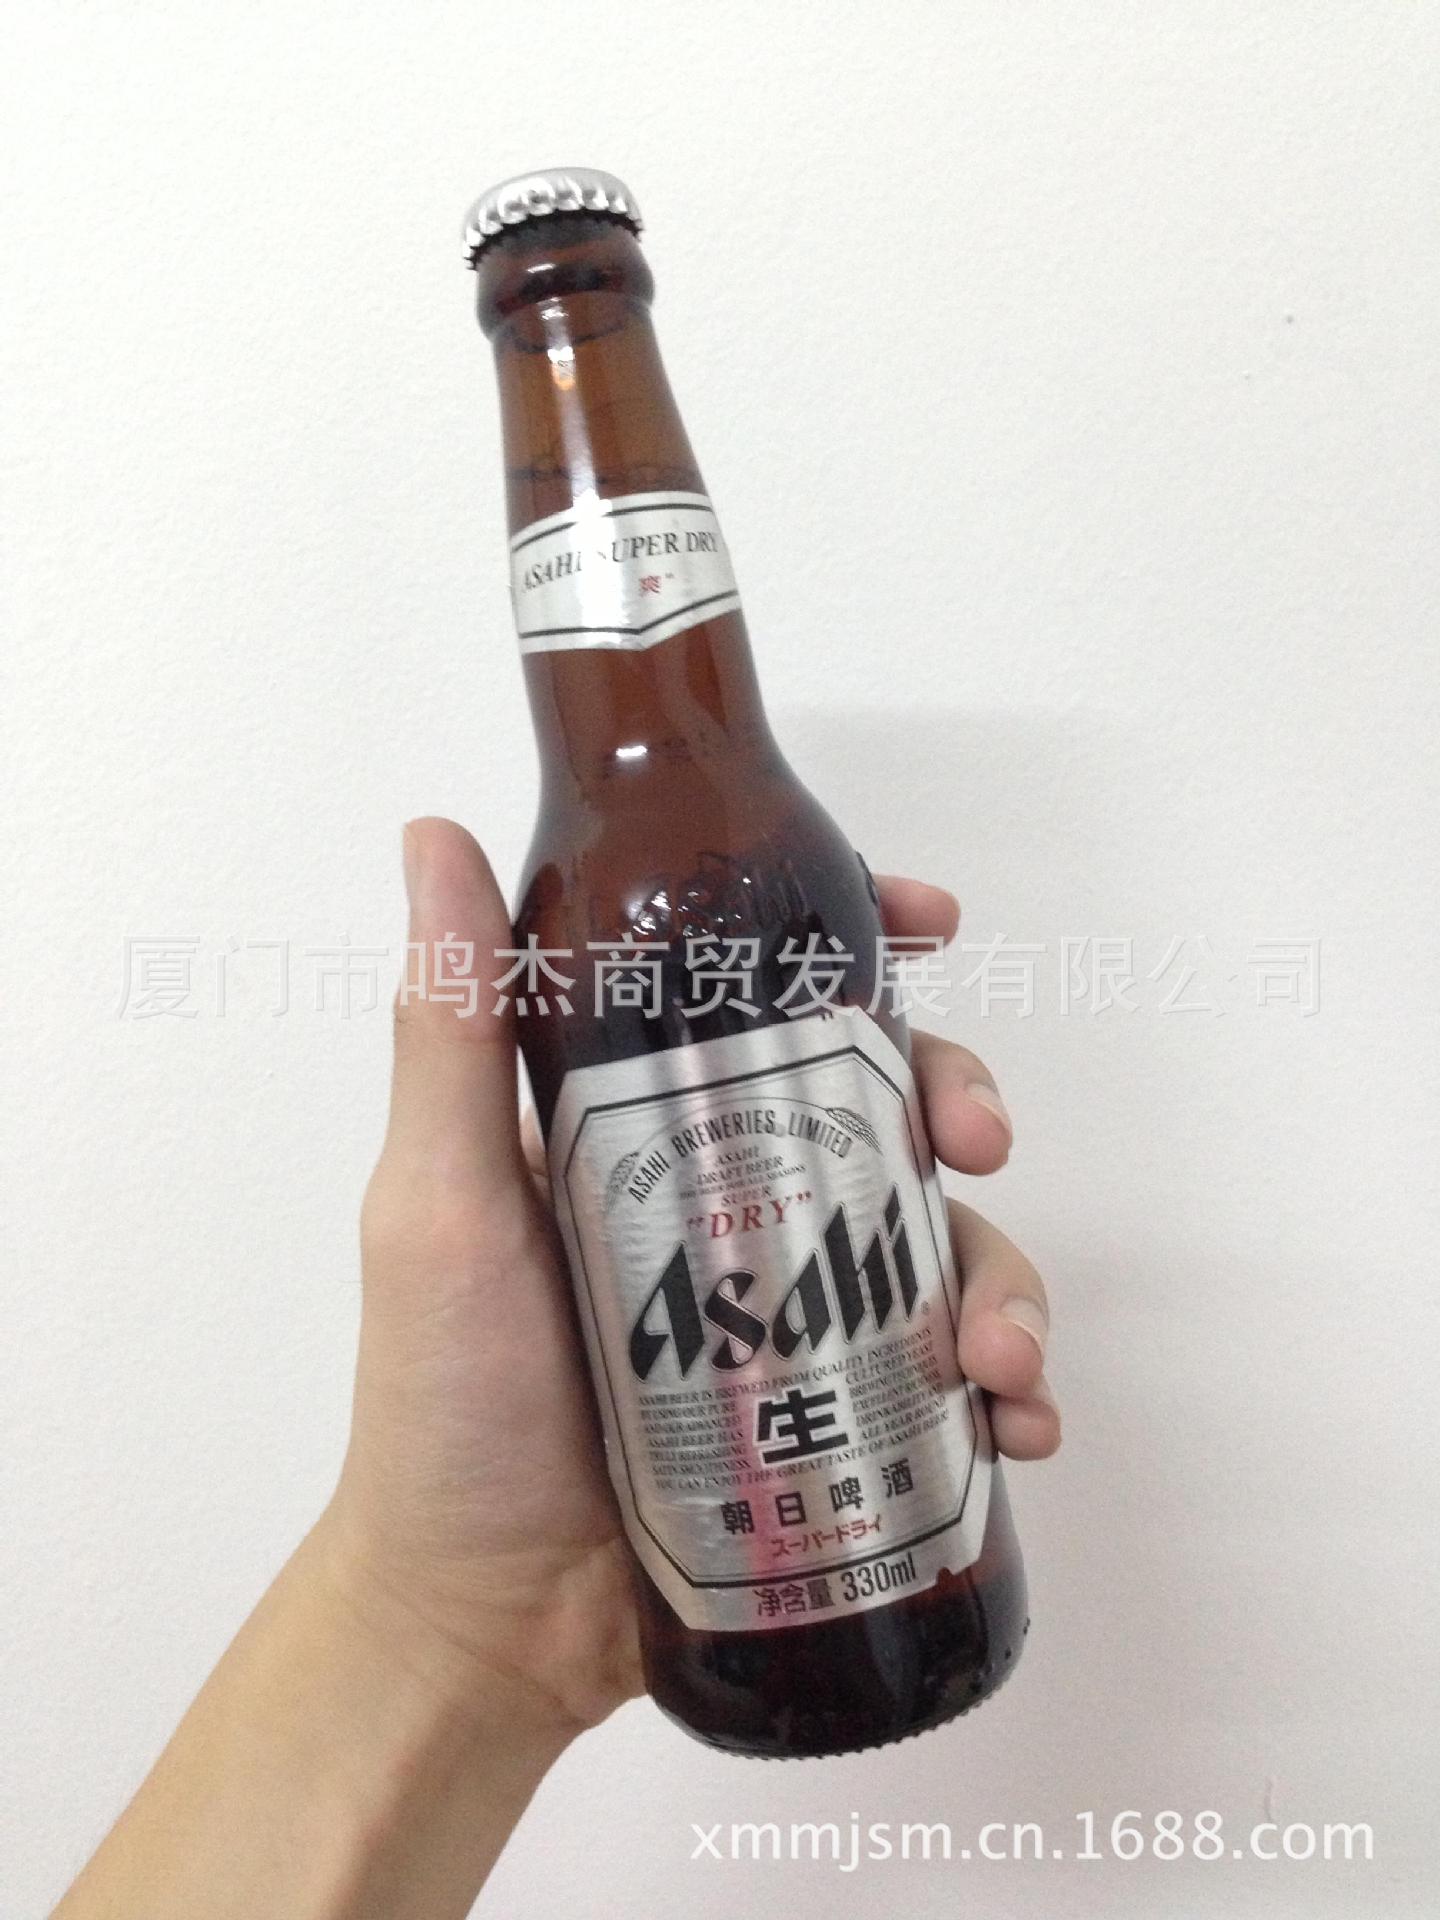 1994年朝日啤酒株式会社正式进入中国市场,先后出资杭州西湖啤酒朝日